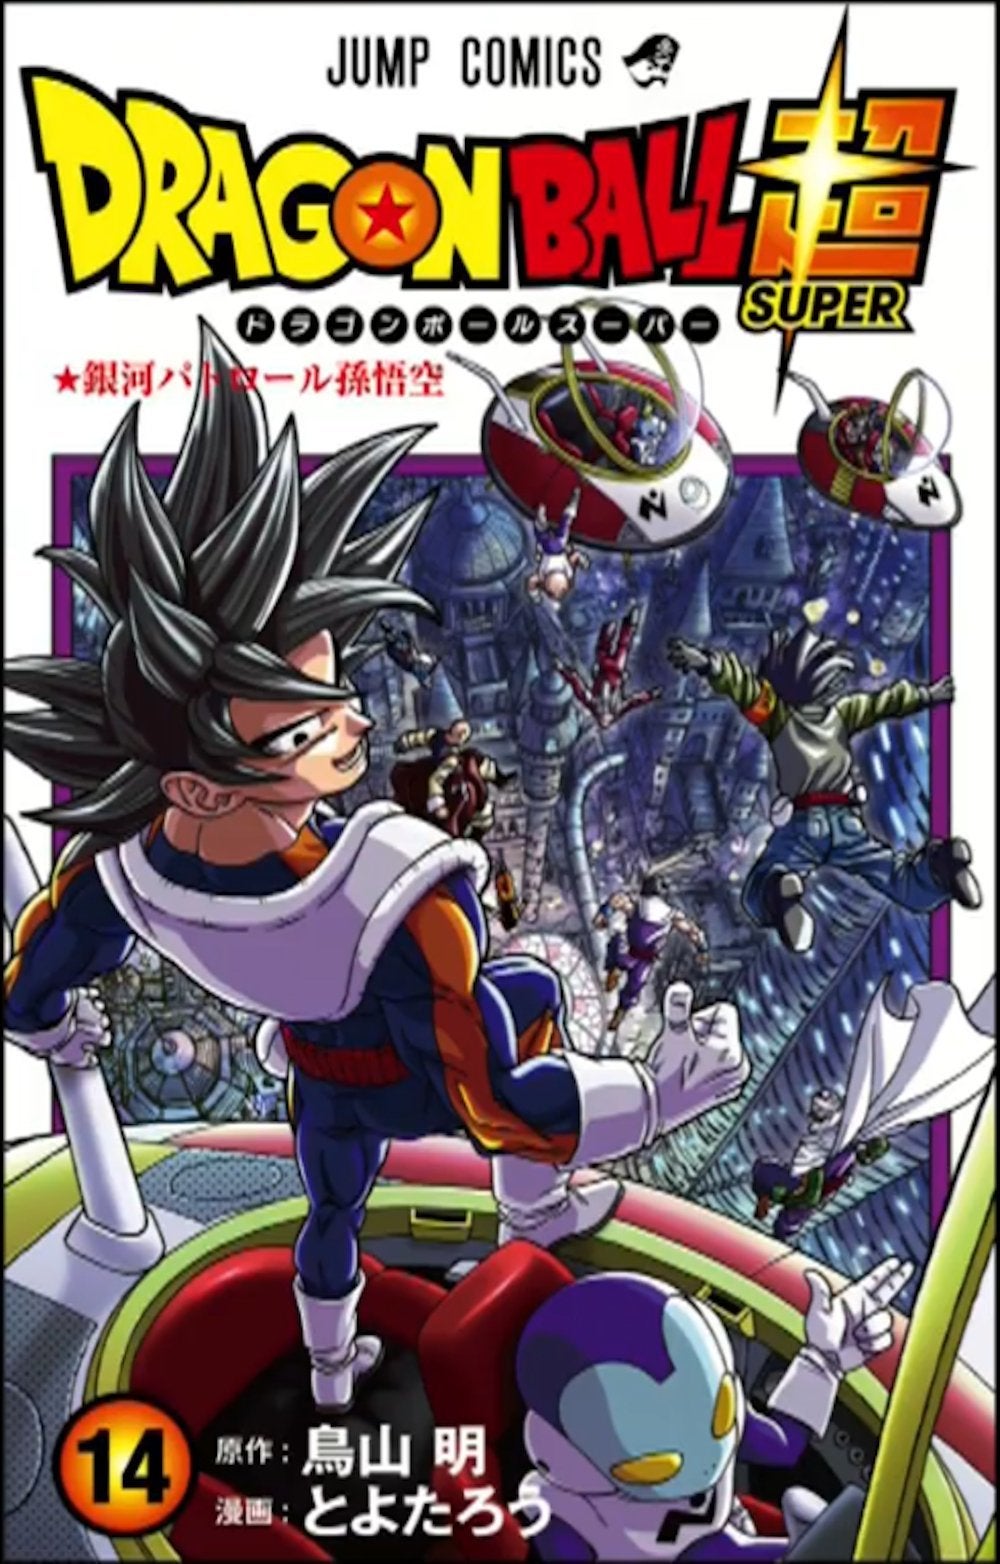 Capa do Volume 14 de Dragon Ball Super traz Goku como patrulheiro galáctico